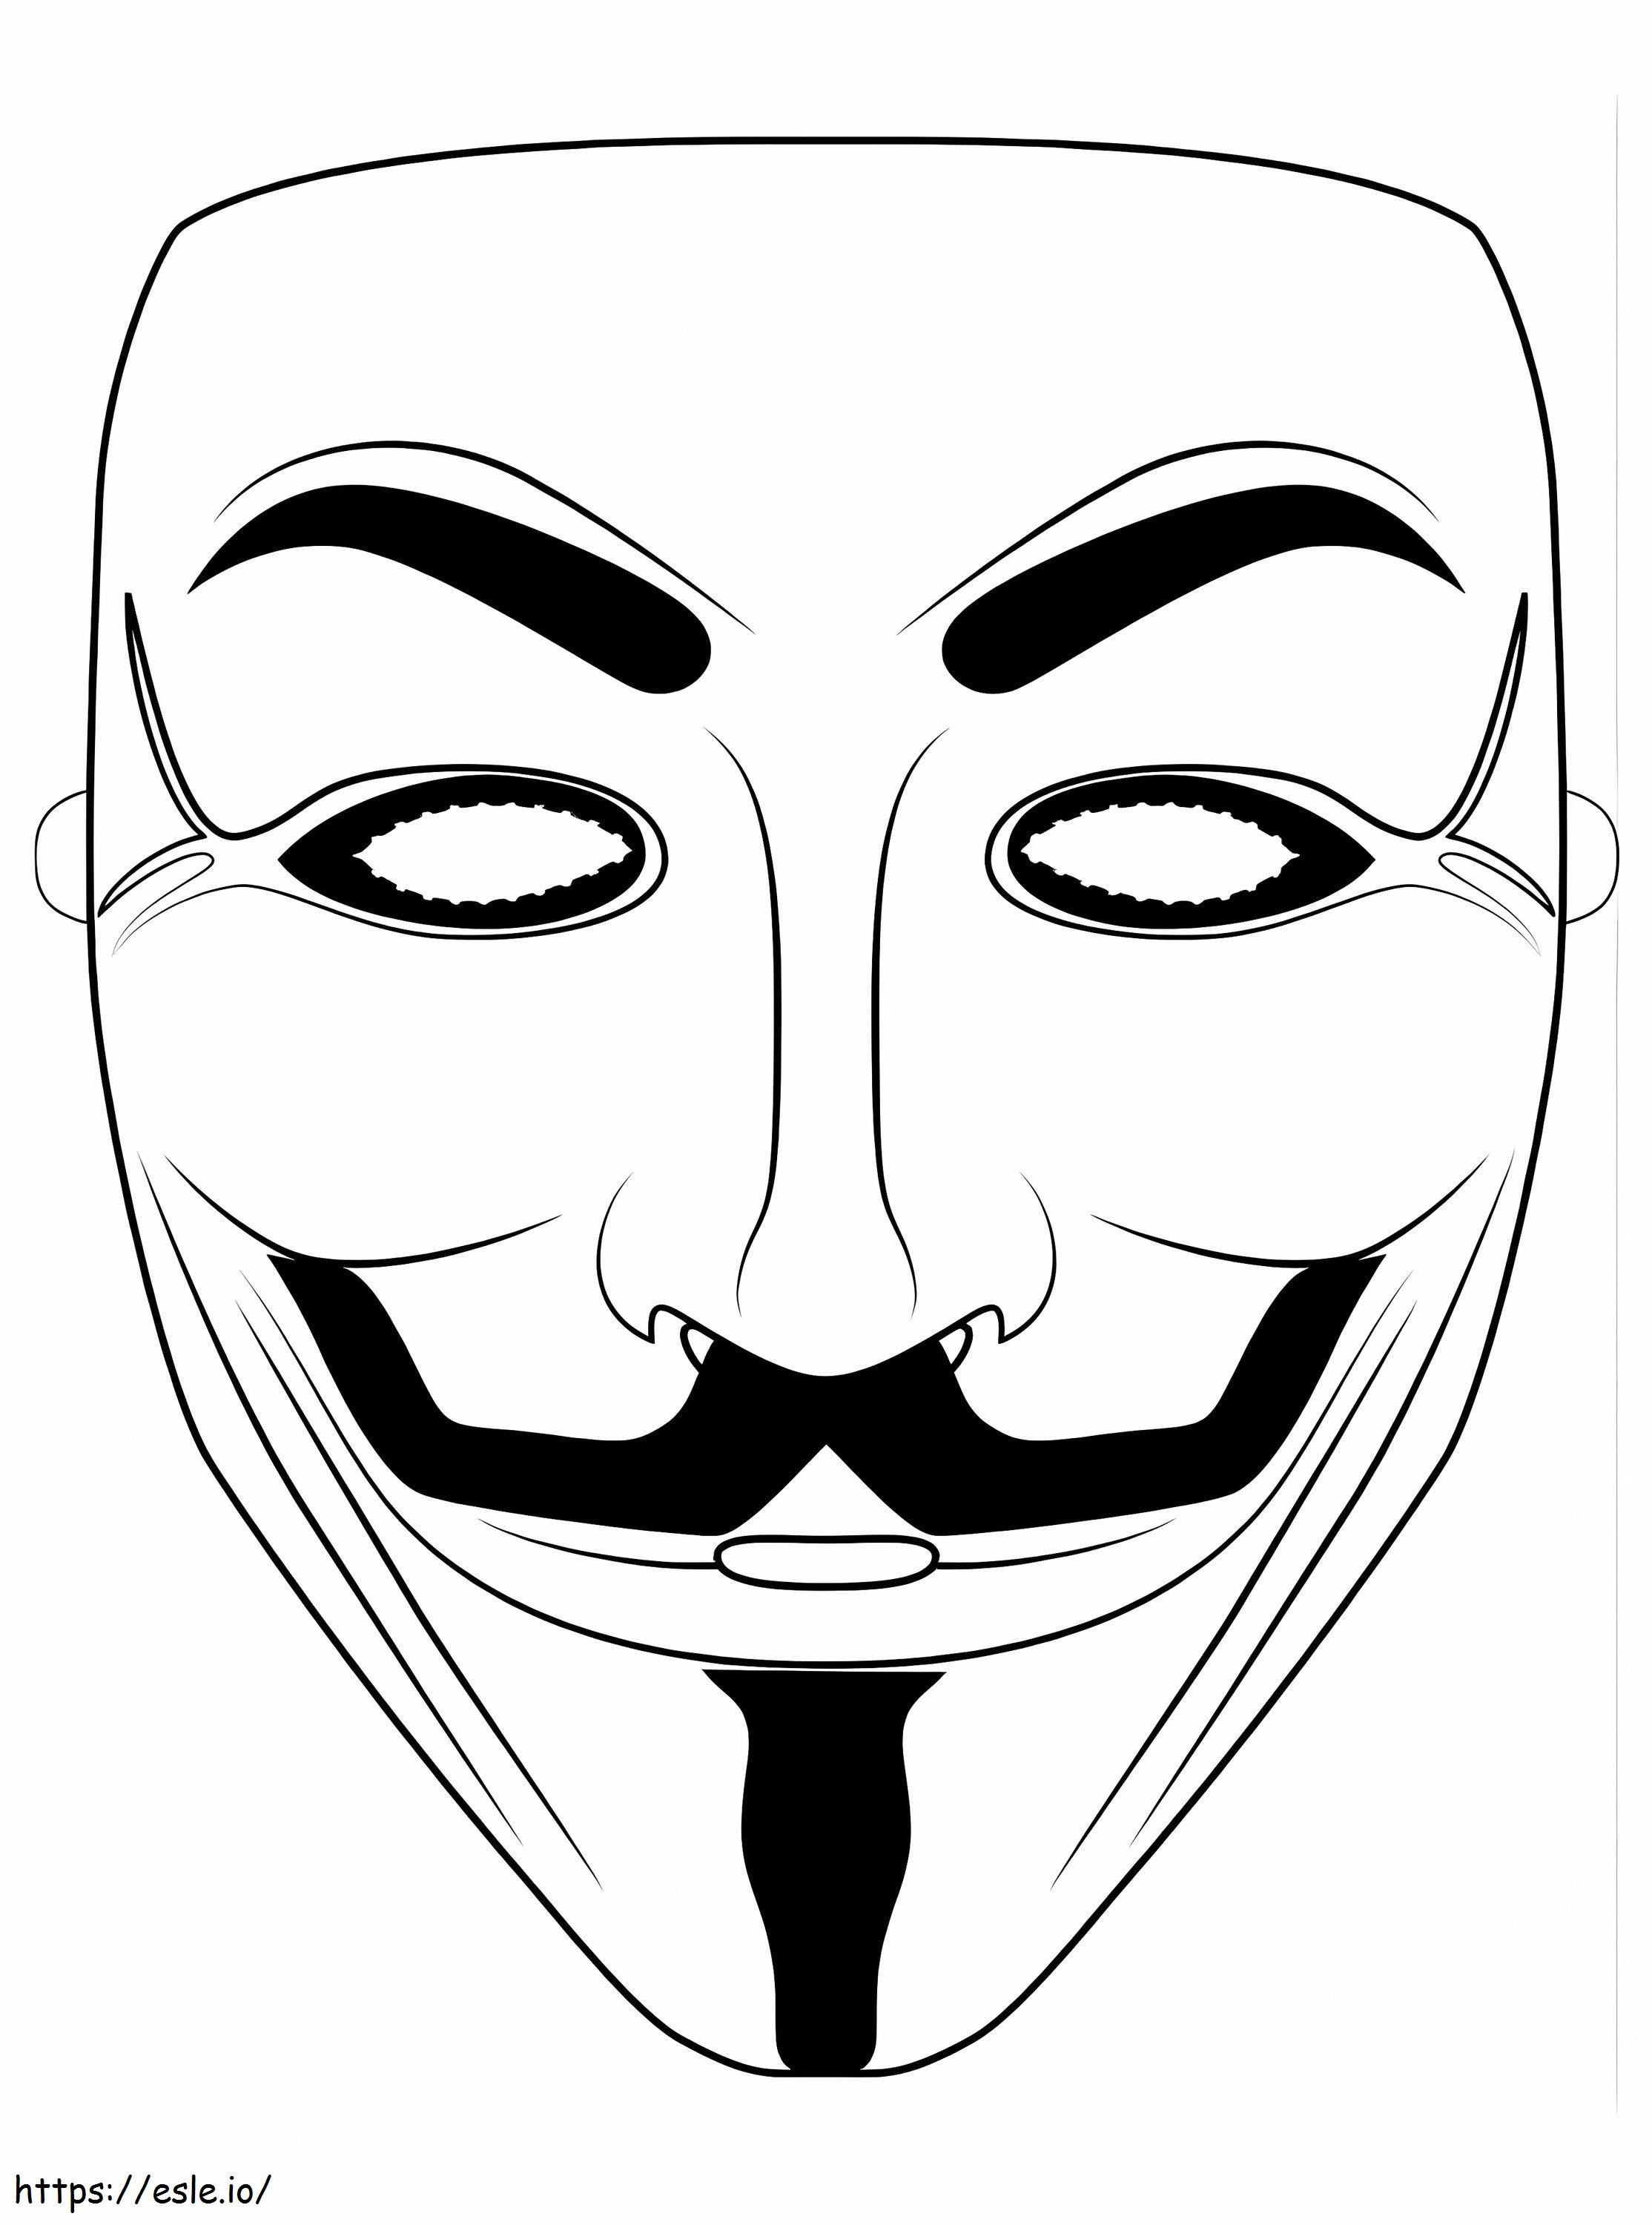 Anonyymi naamio värityskuva